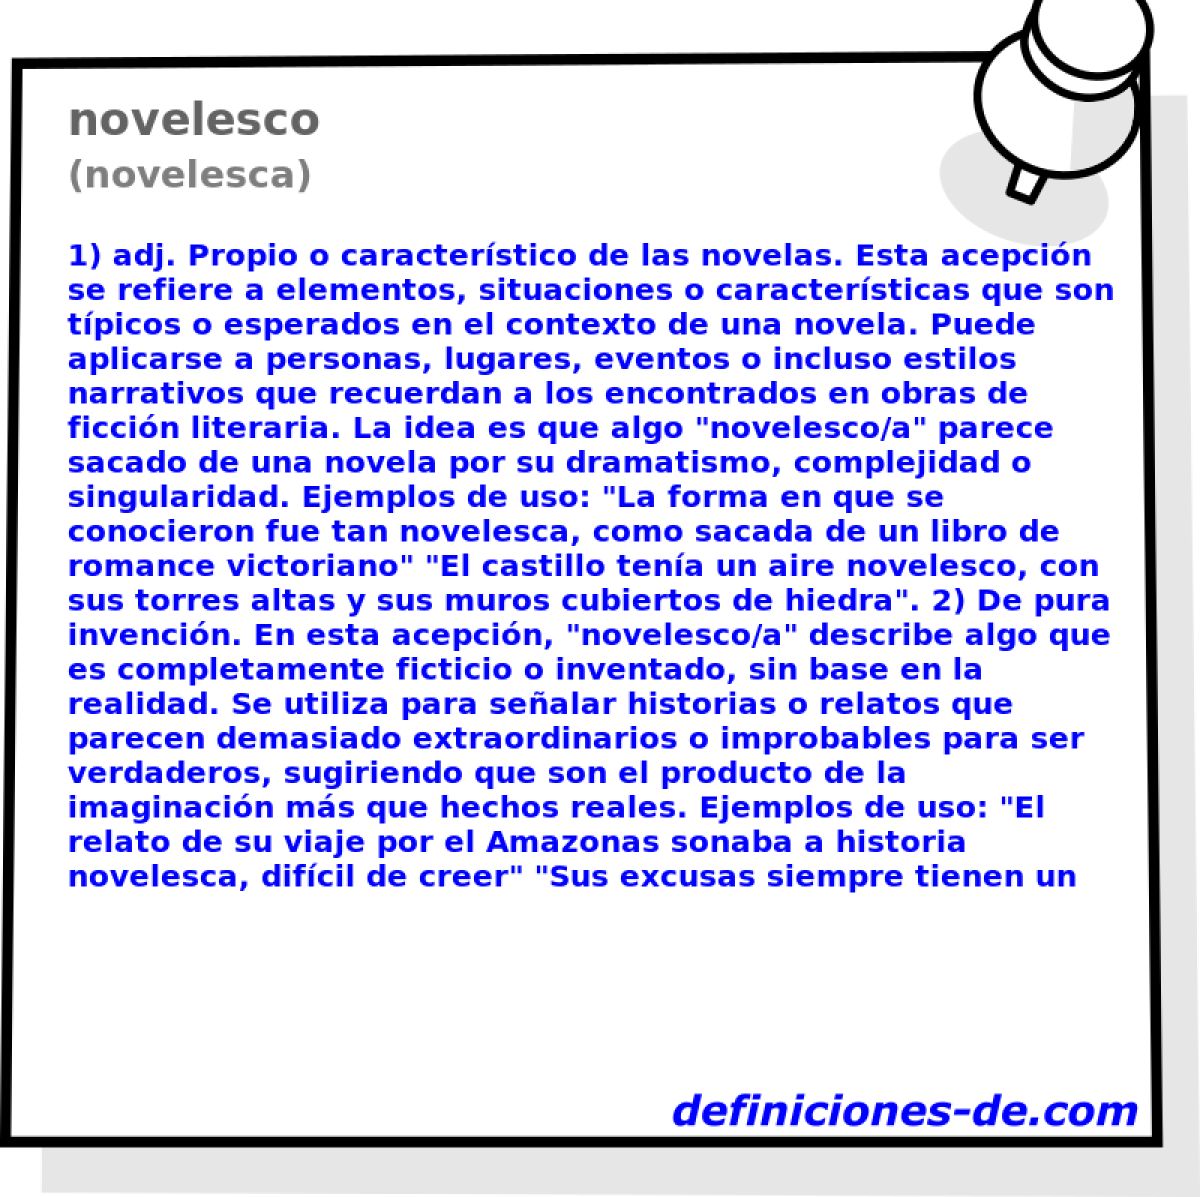 novelesco (novelesca)